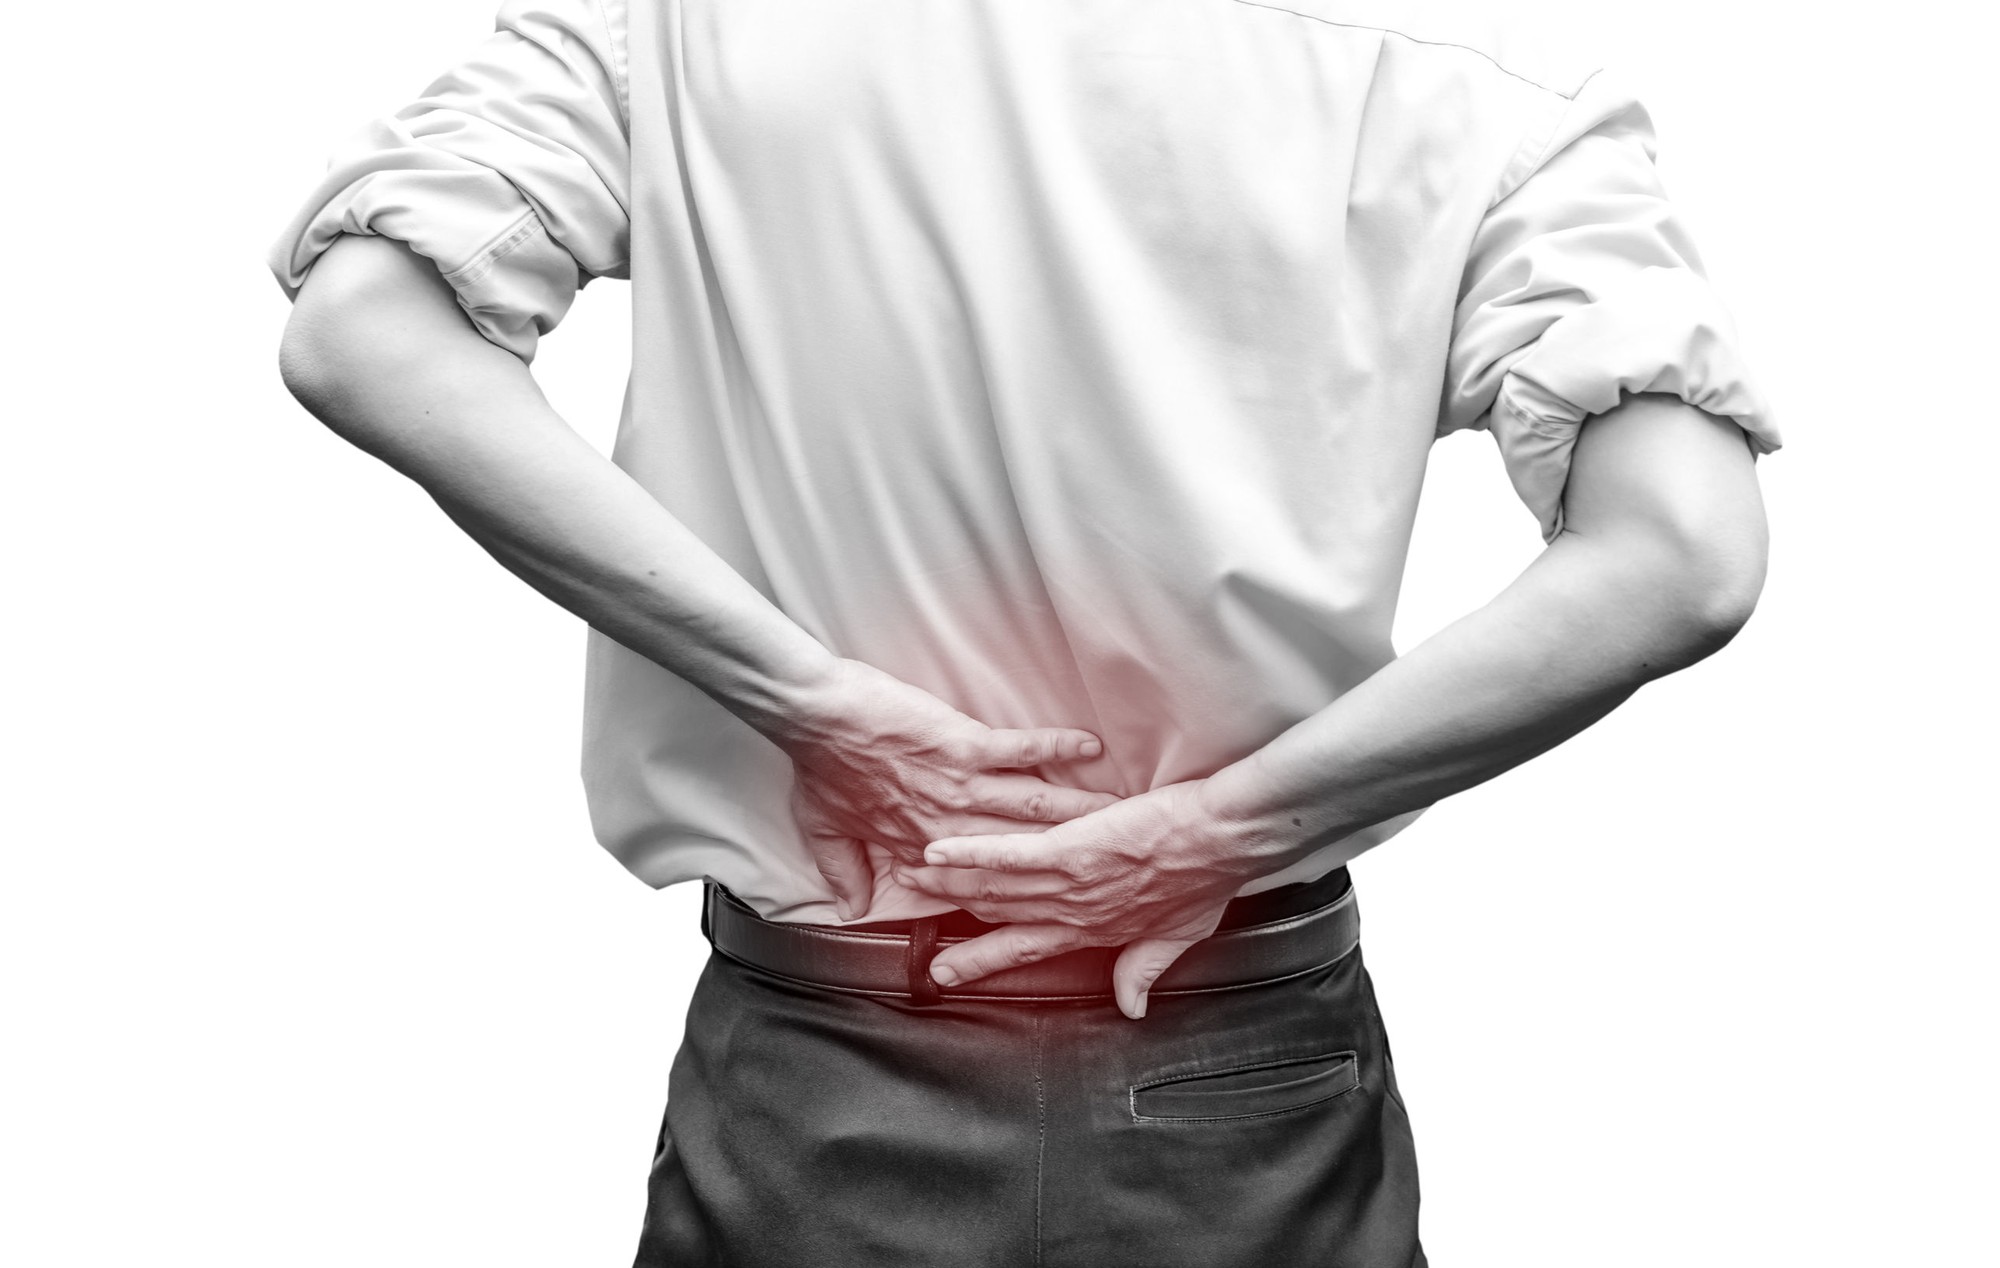 Bị đau lưng thì làm thế nào để chữa trị dứt điểm